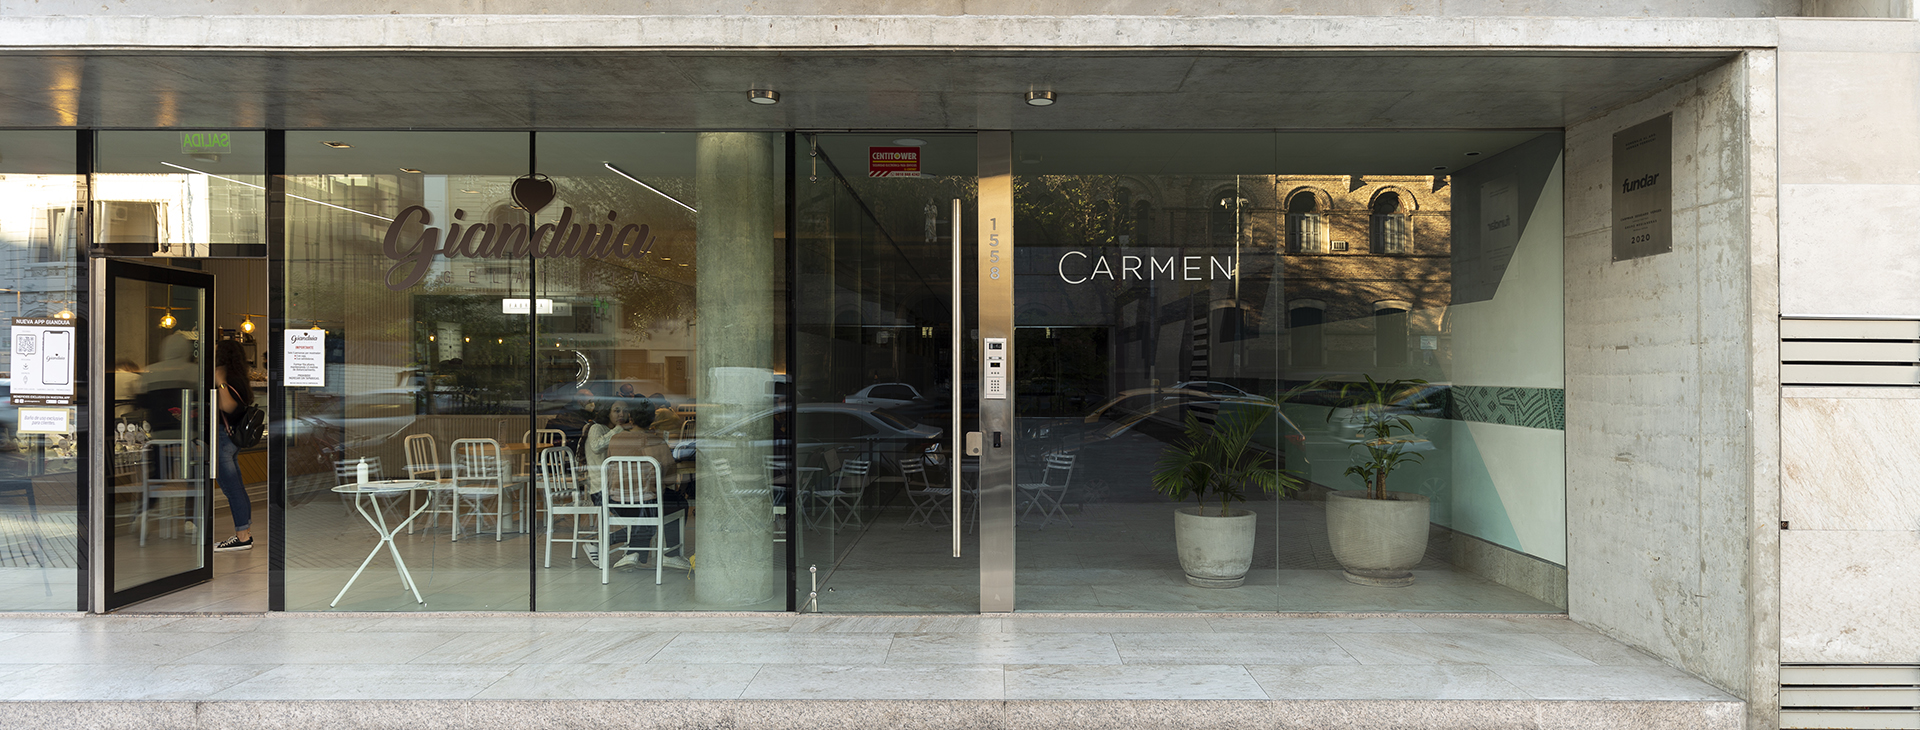 Carmen - Galería de Fotos